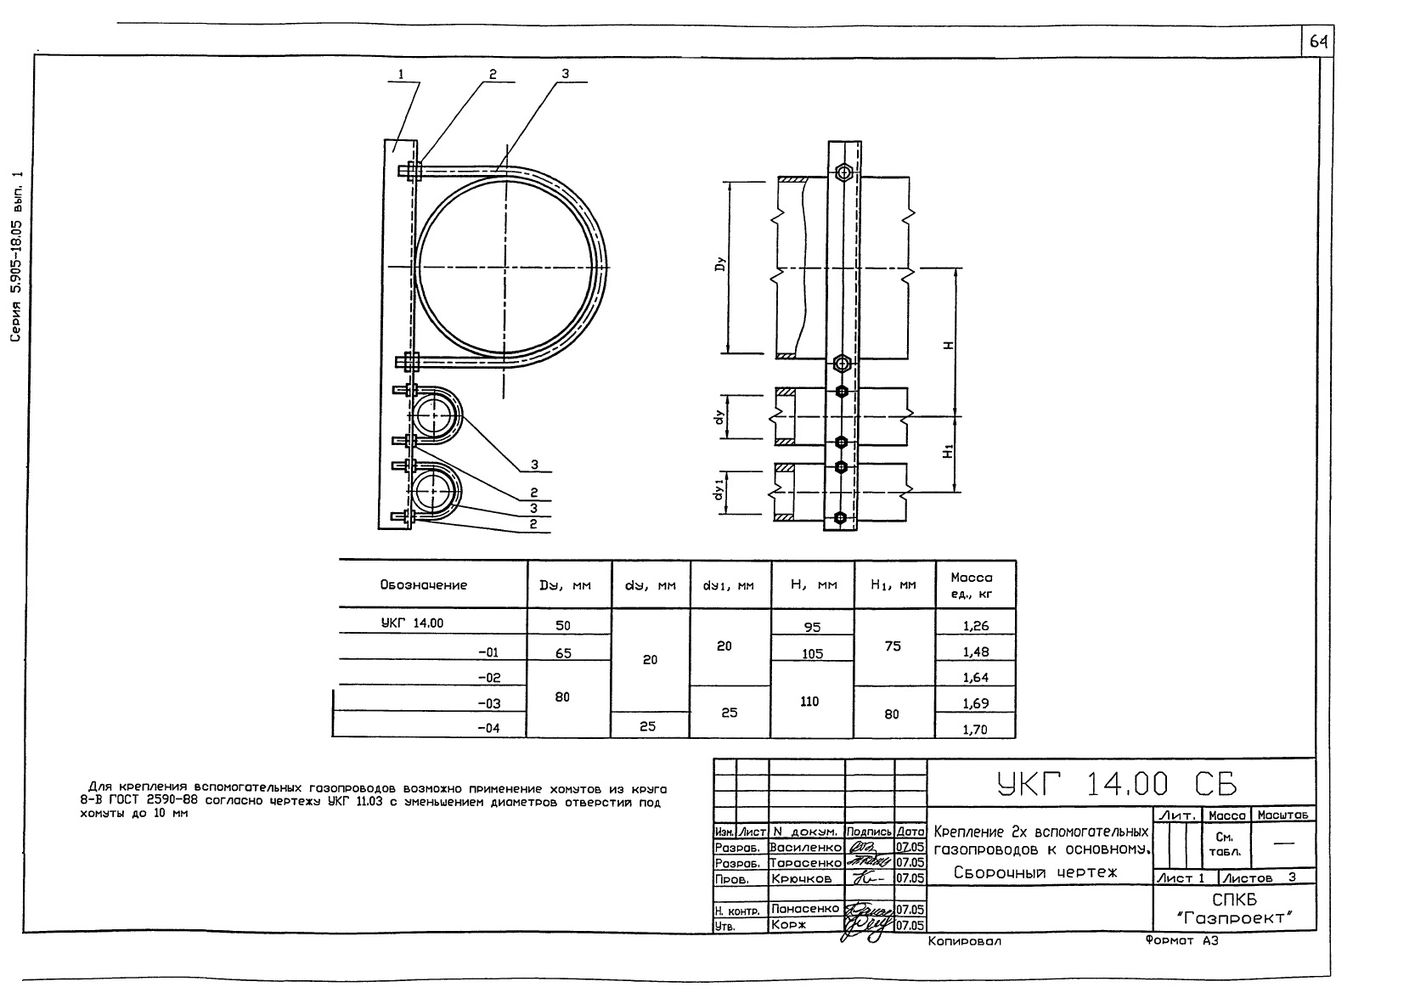 Крепление 2х (двух) вспомогательных газопроводов к основному УКГ 14.00 СБ серия 5.905-18.05 выпуск 1 стр.1